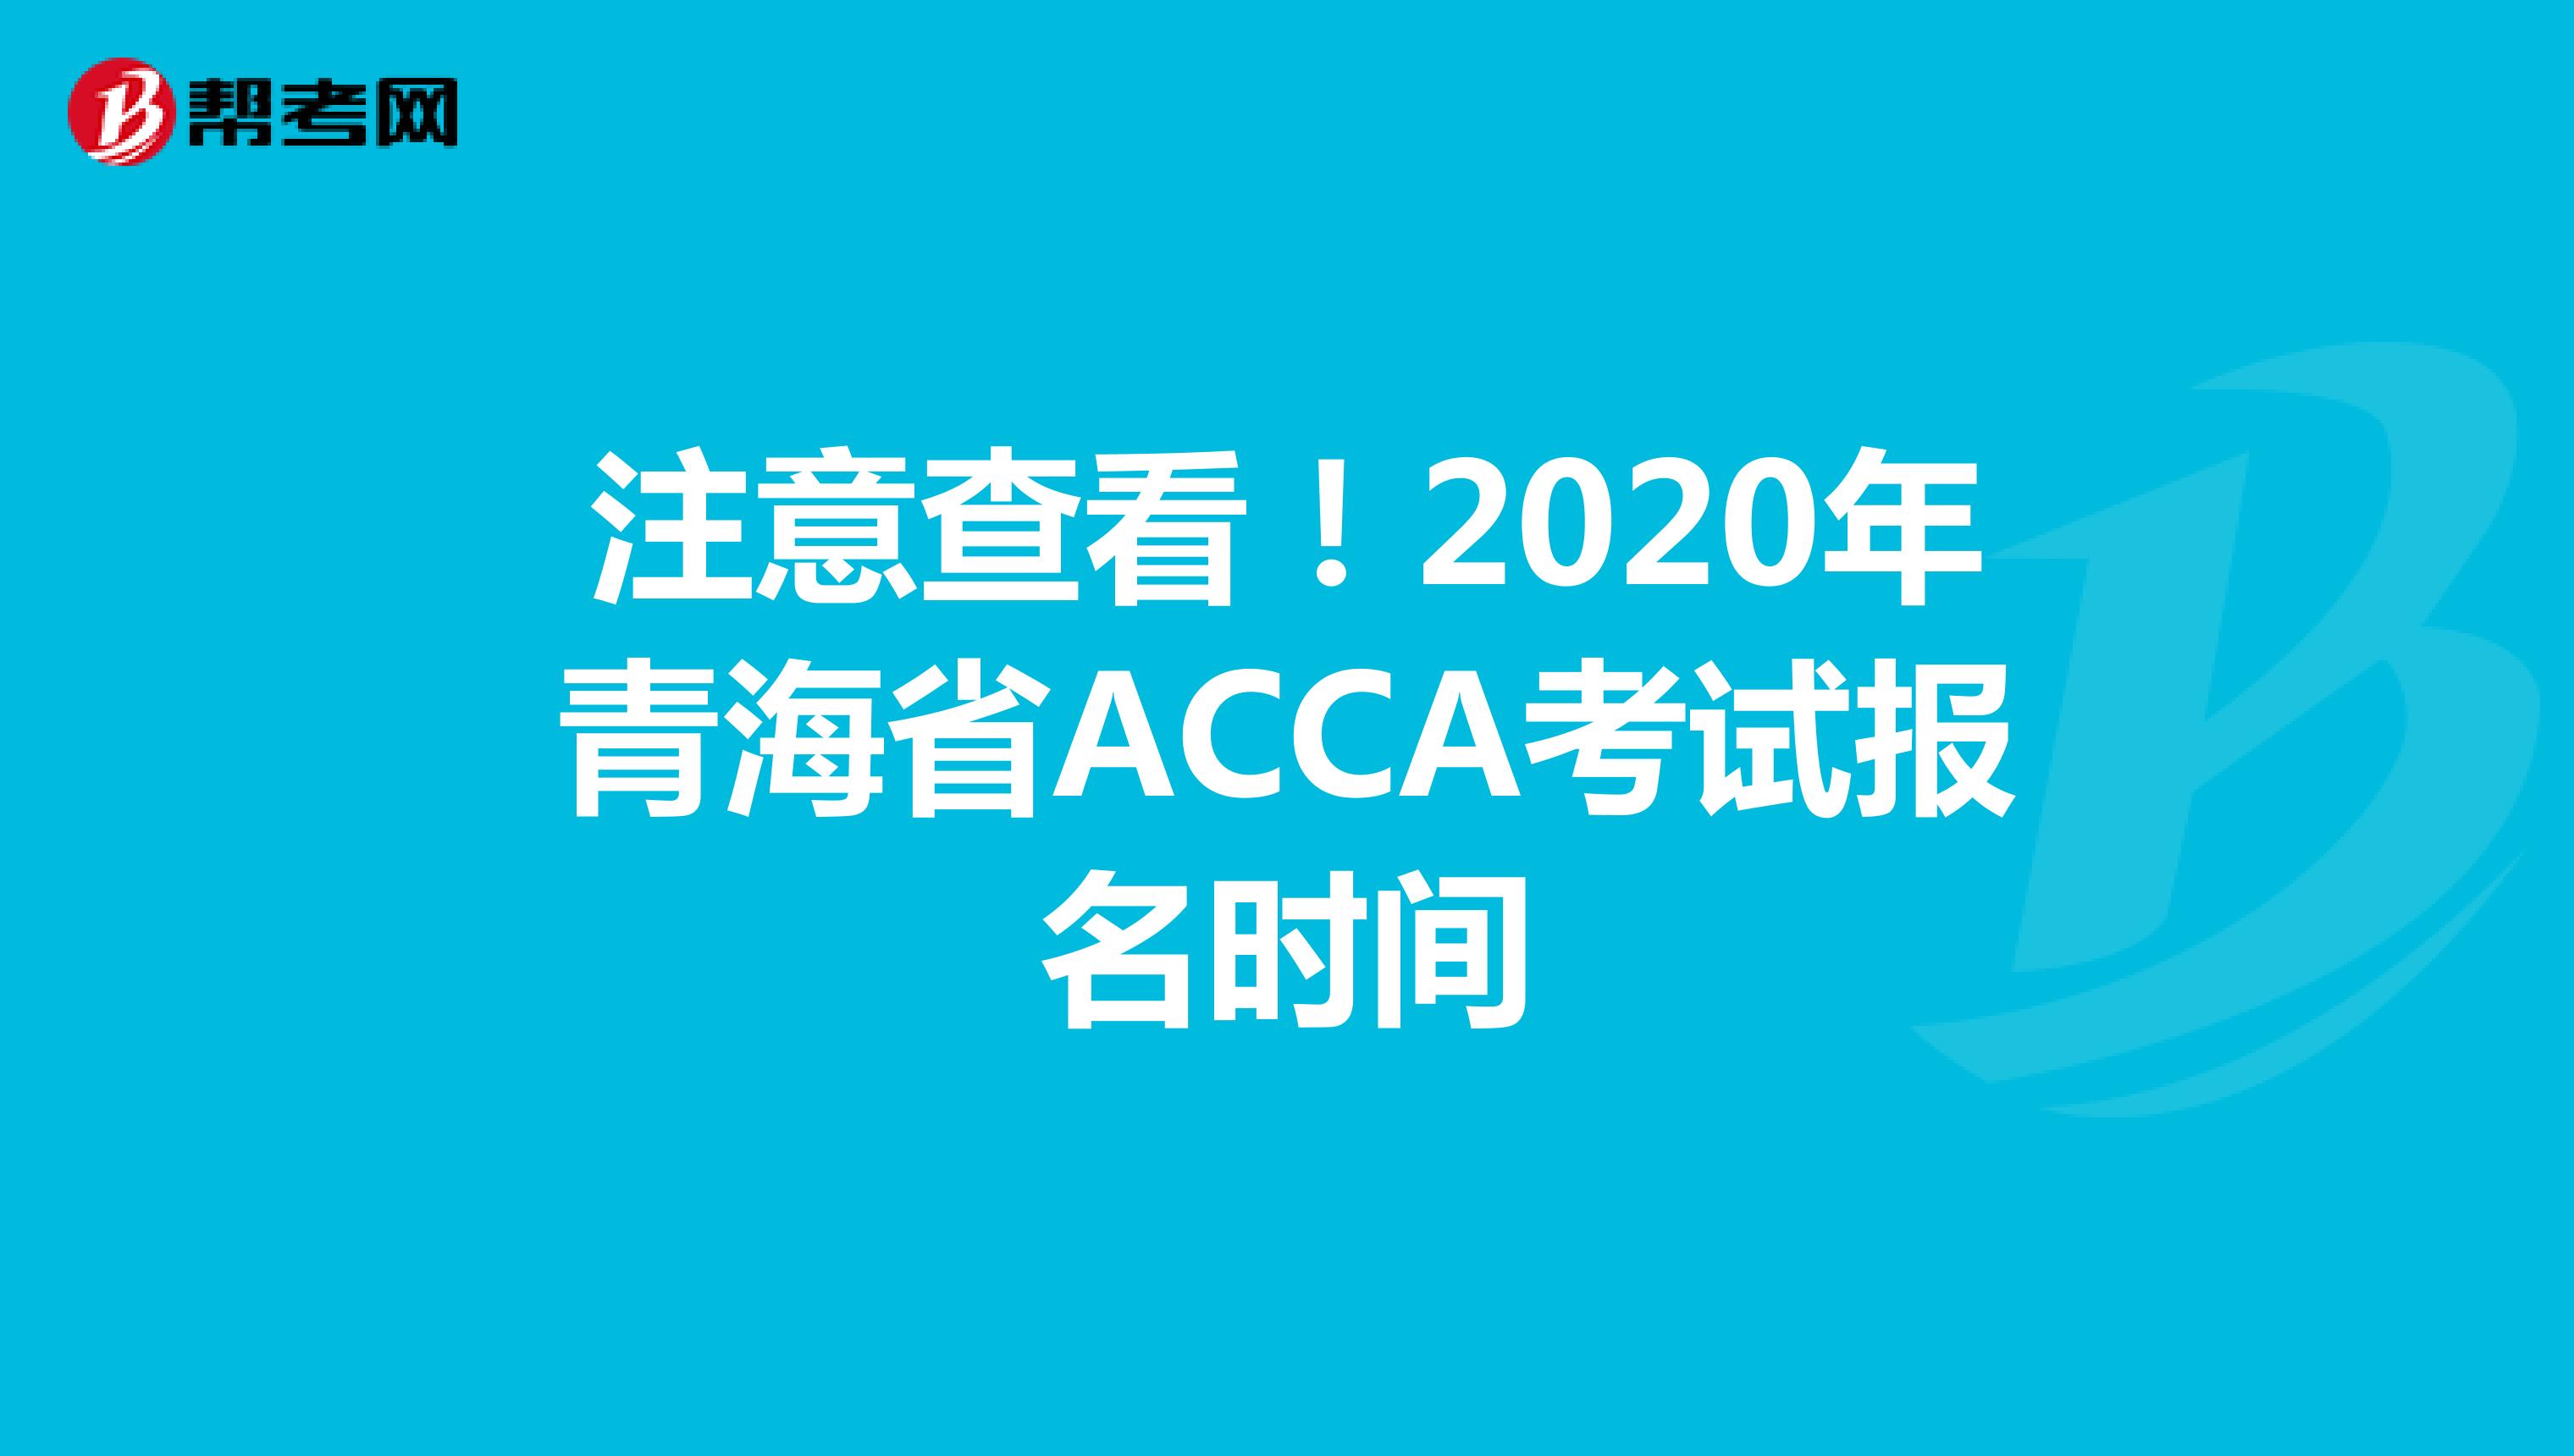 注意查看！2020年青海省ACCA考试报名时间